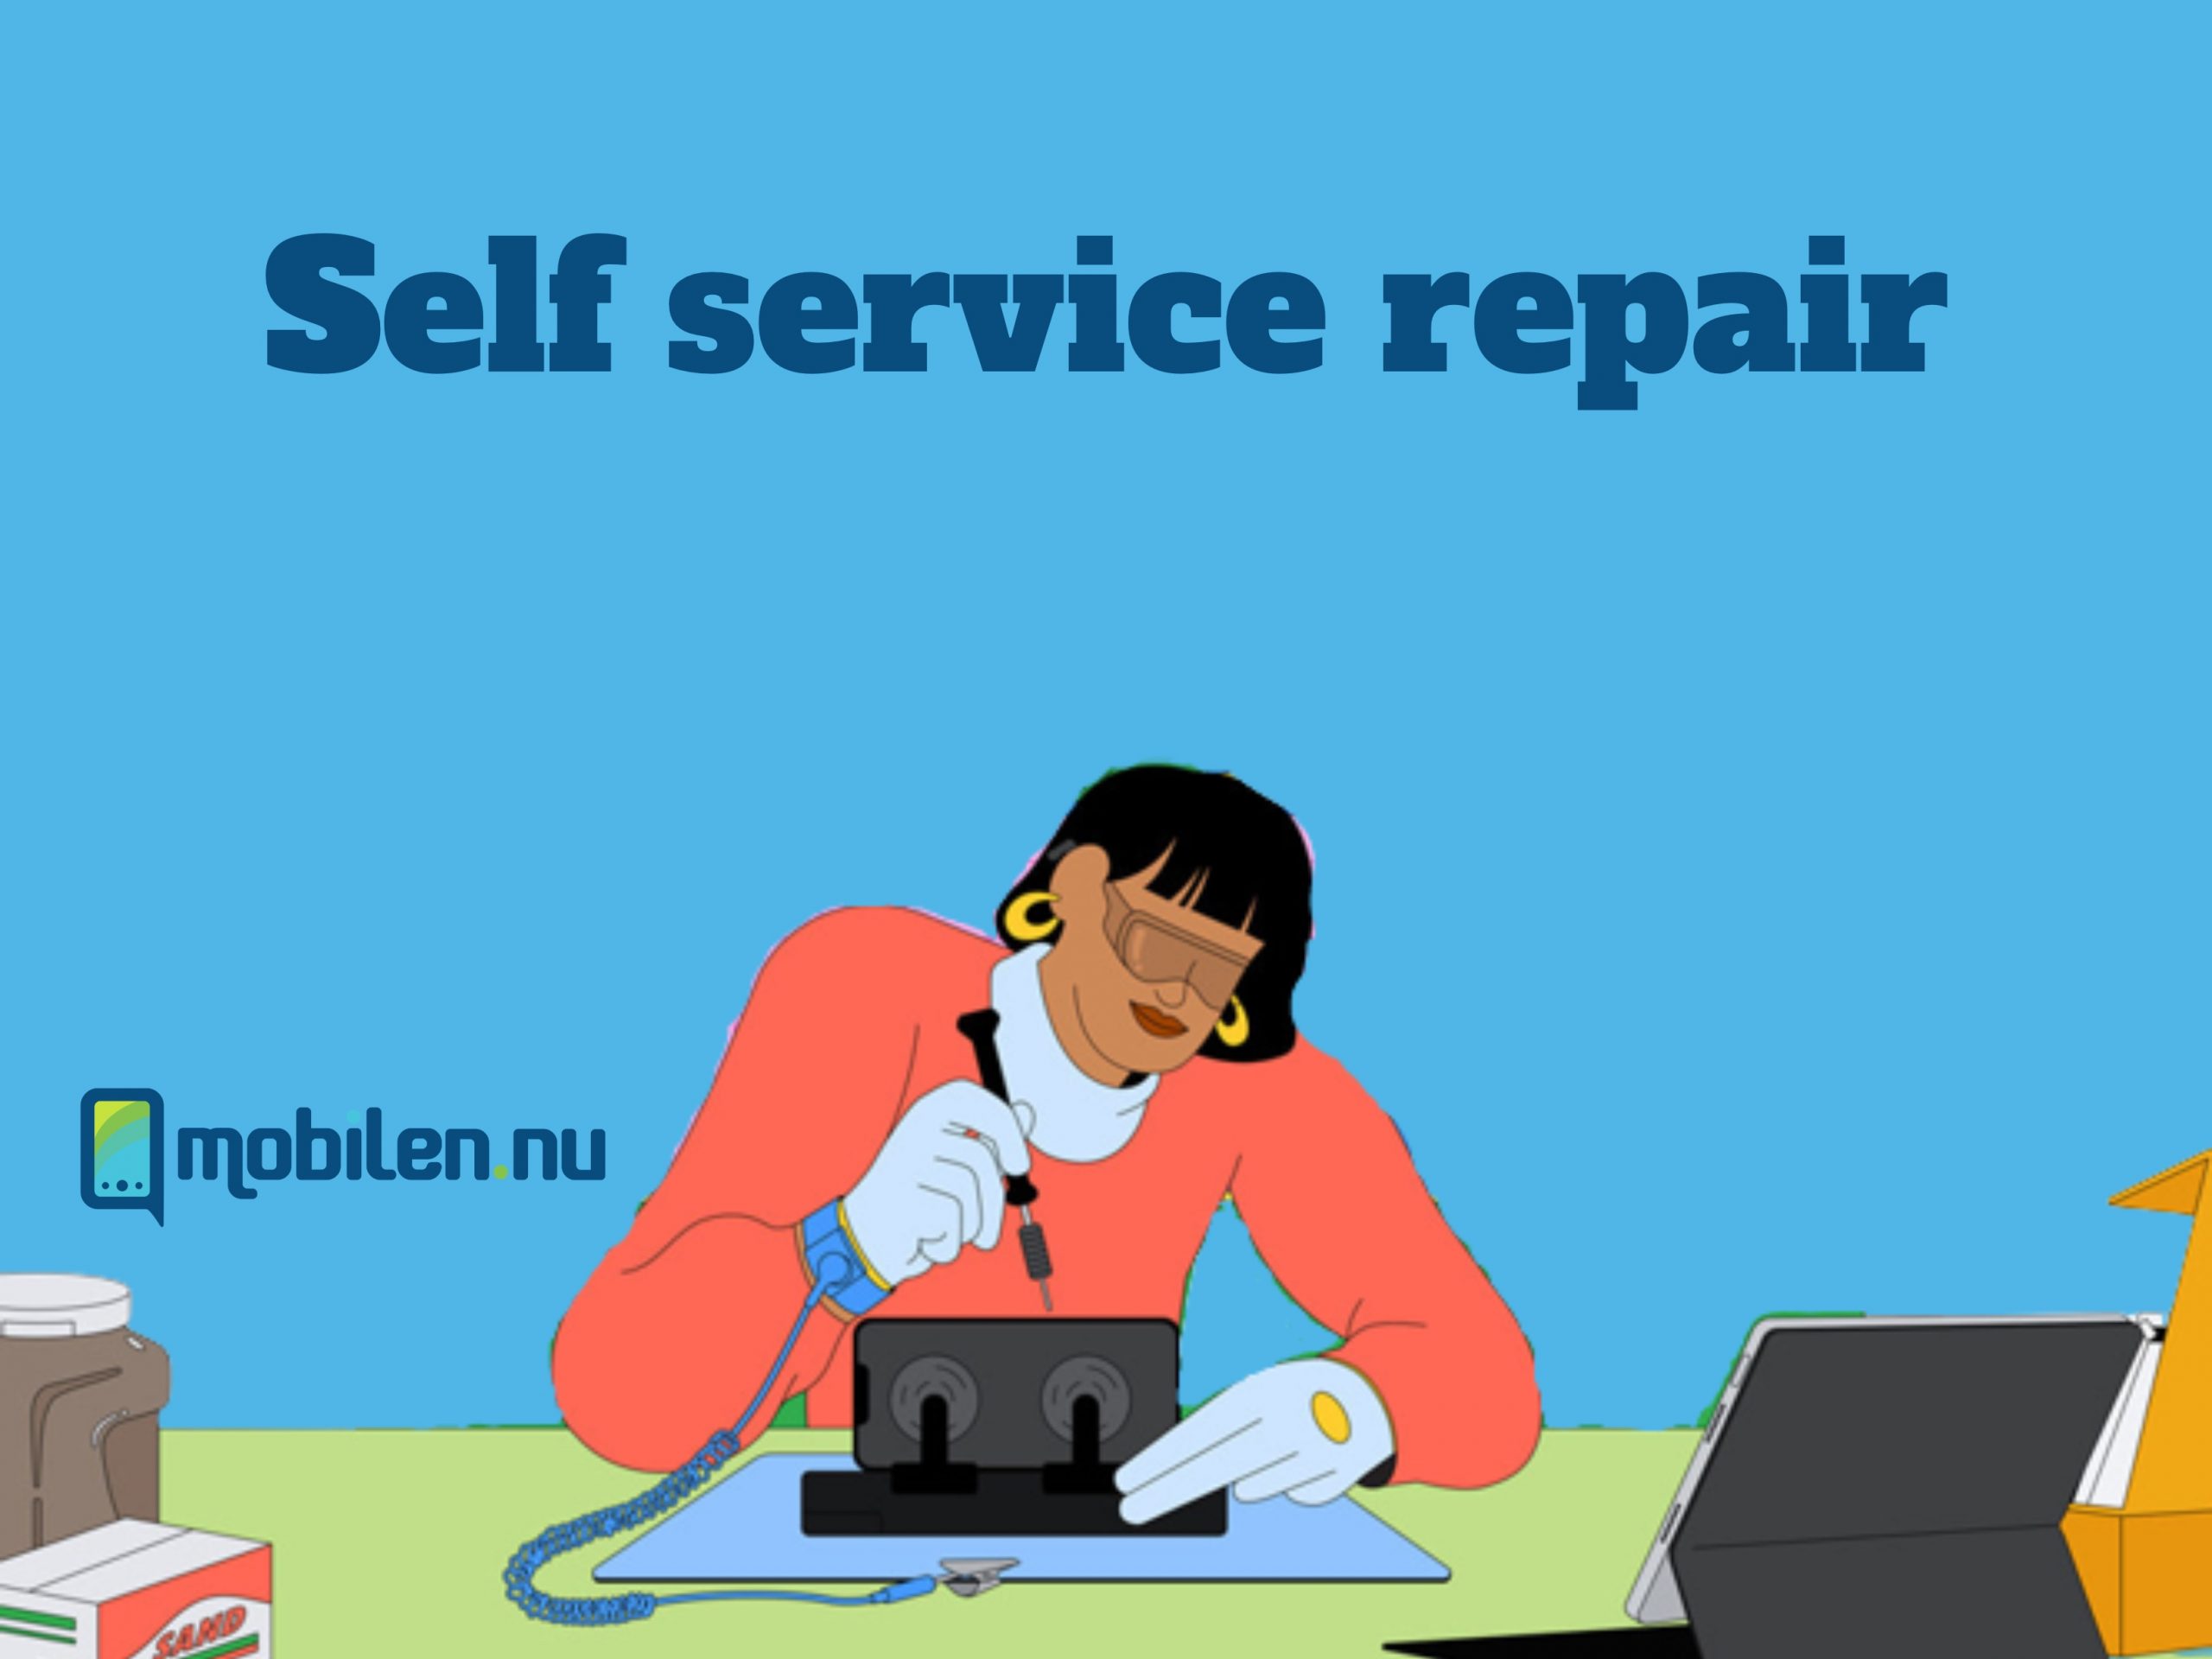 Self service repair